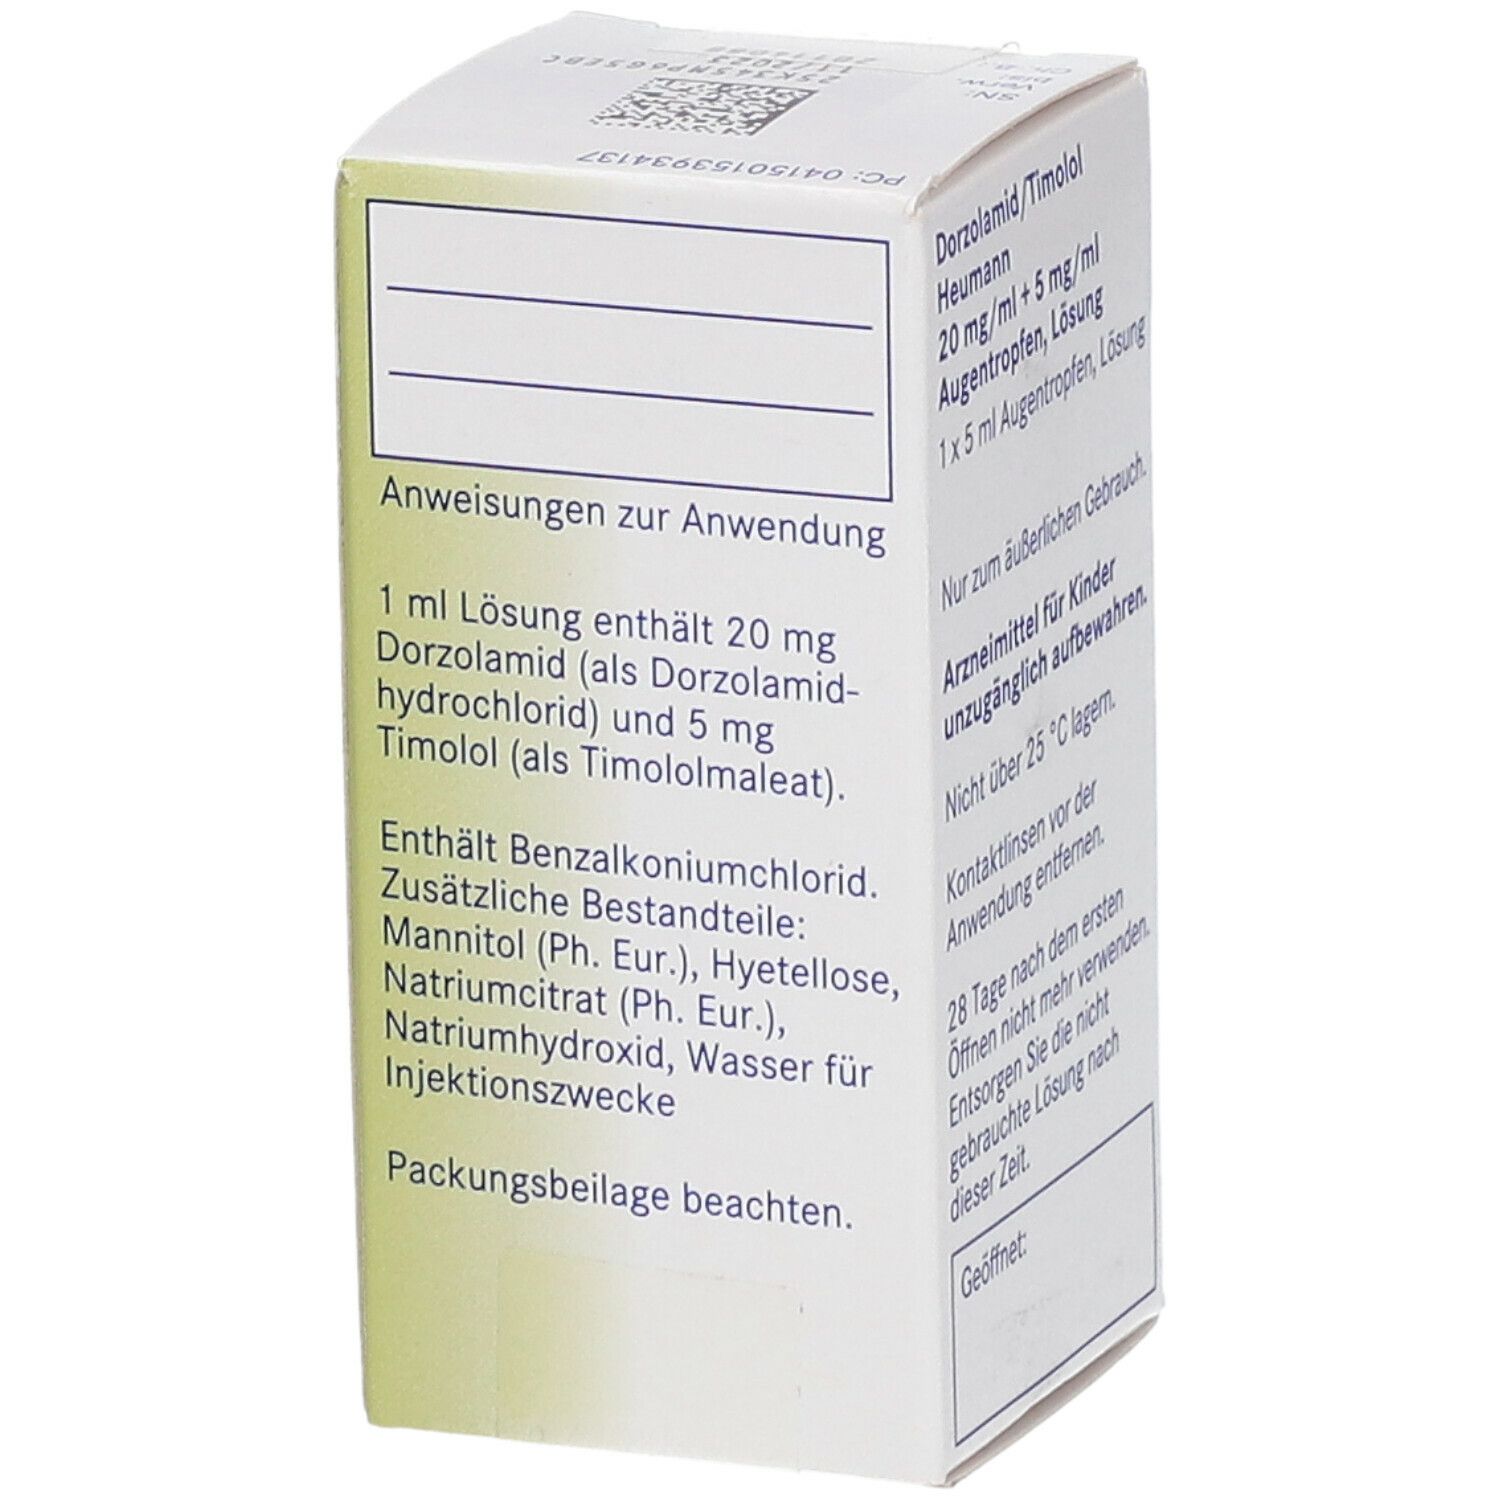 Dorzolamid/Timolol Heumann 20 mg/ml + 5 mg/ml